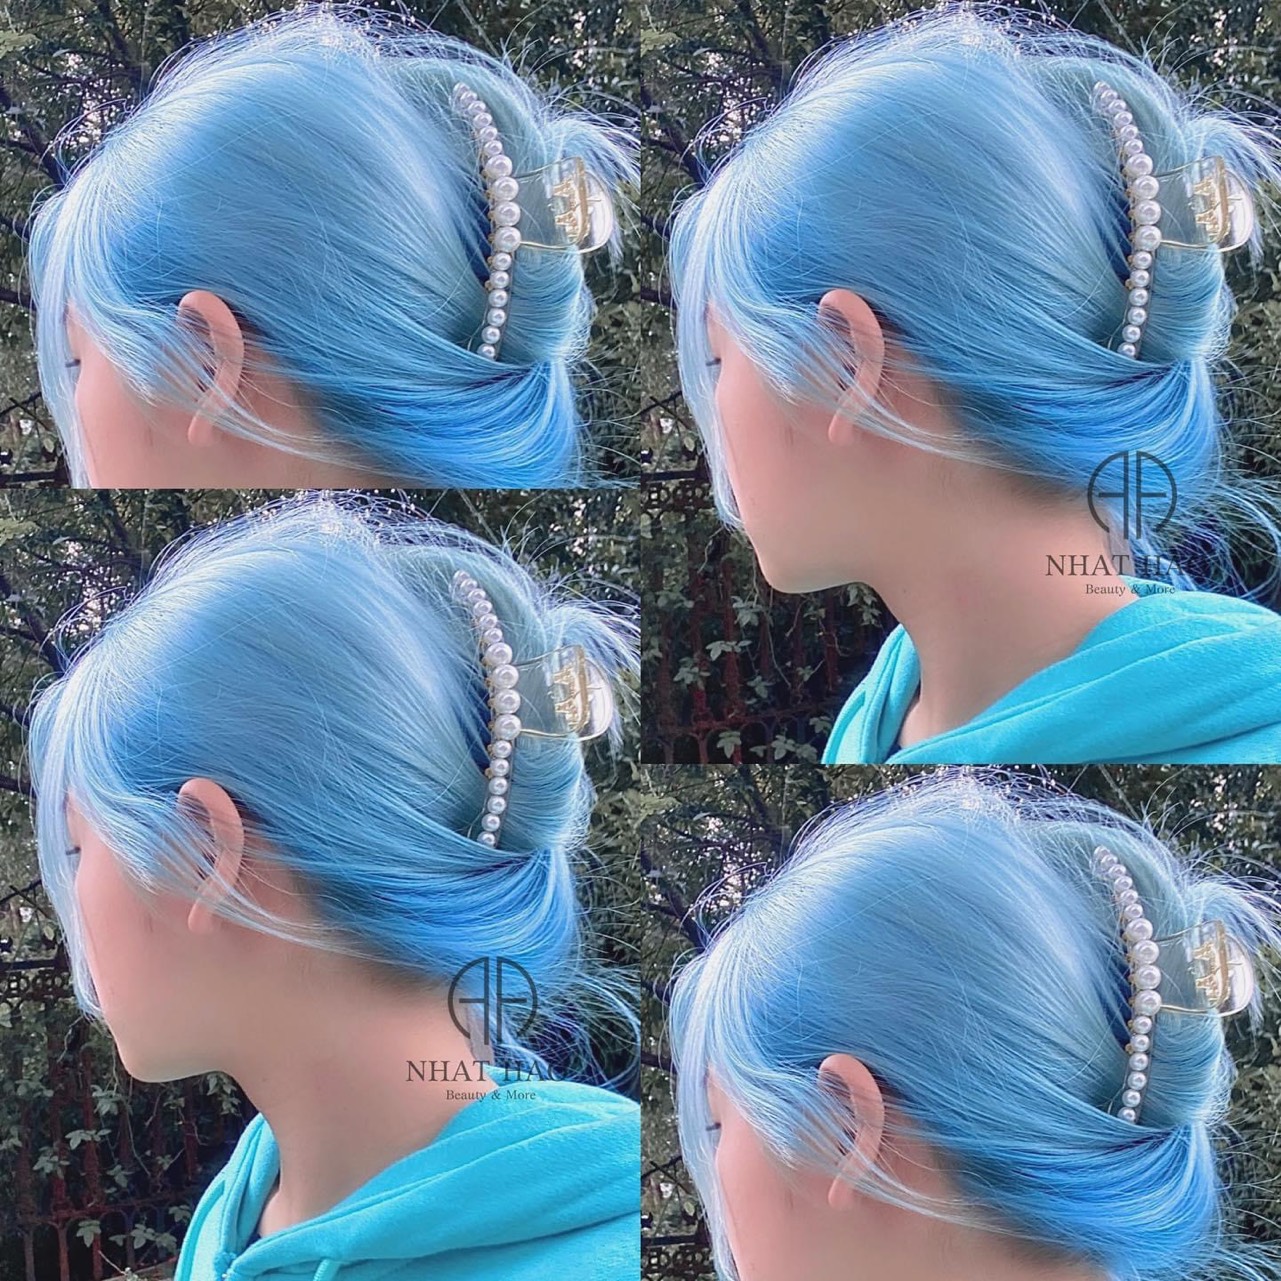 Nhuộm tóc màu xanh ngọc cá tính độc đỉnh tôn da